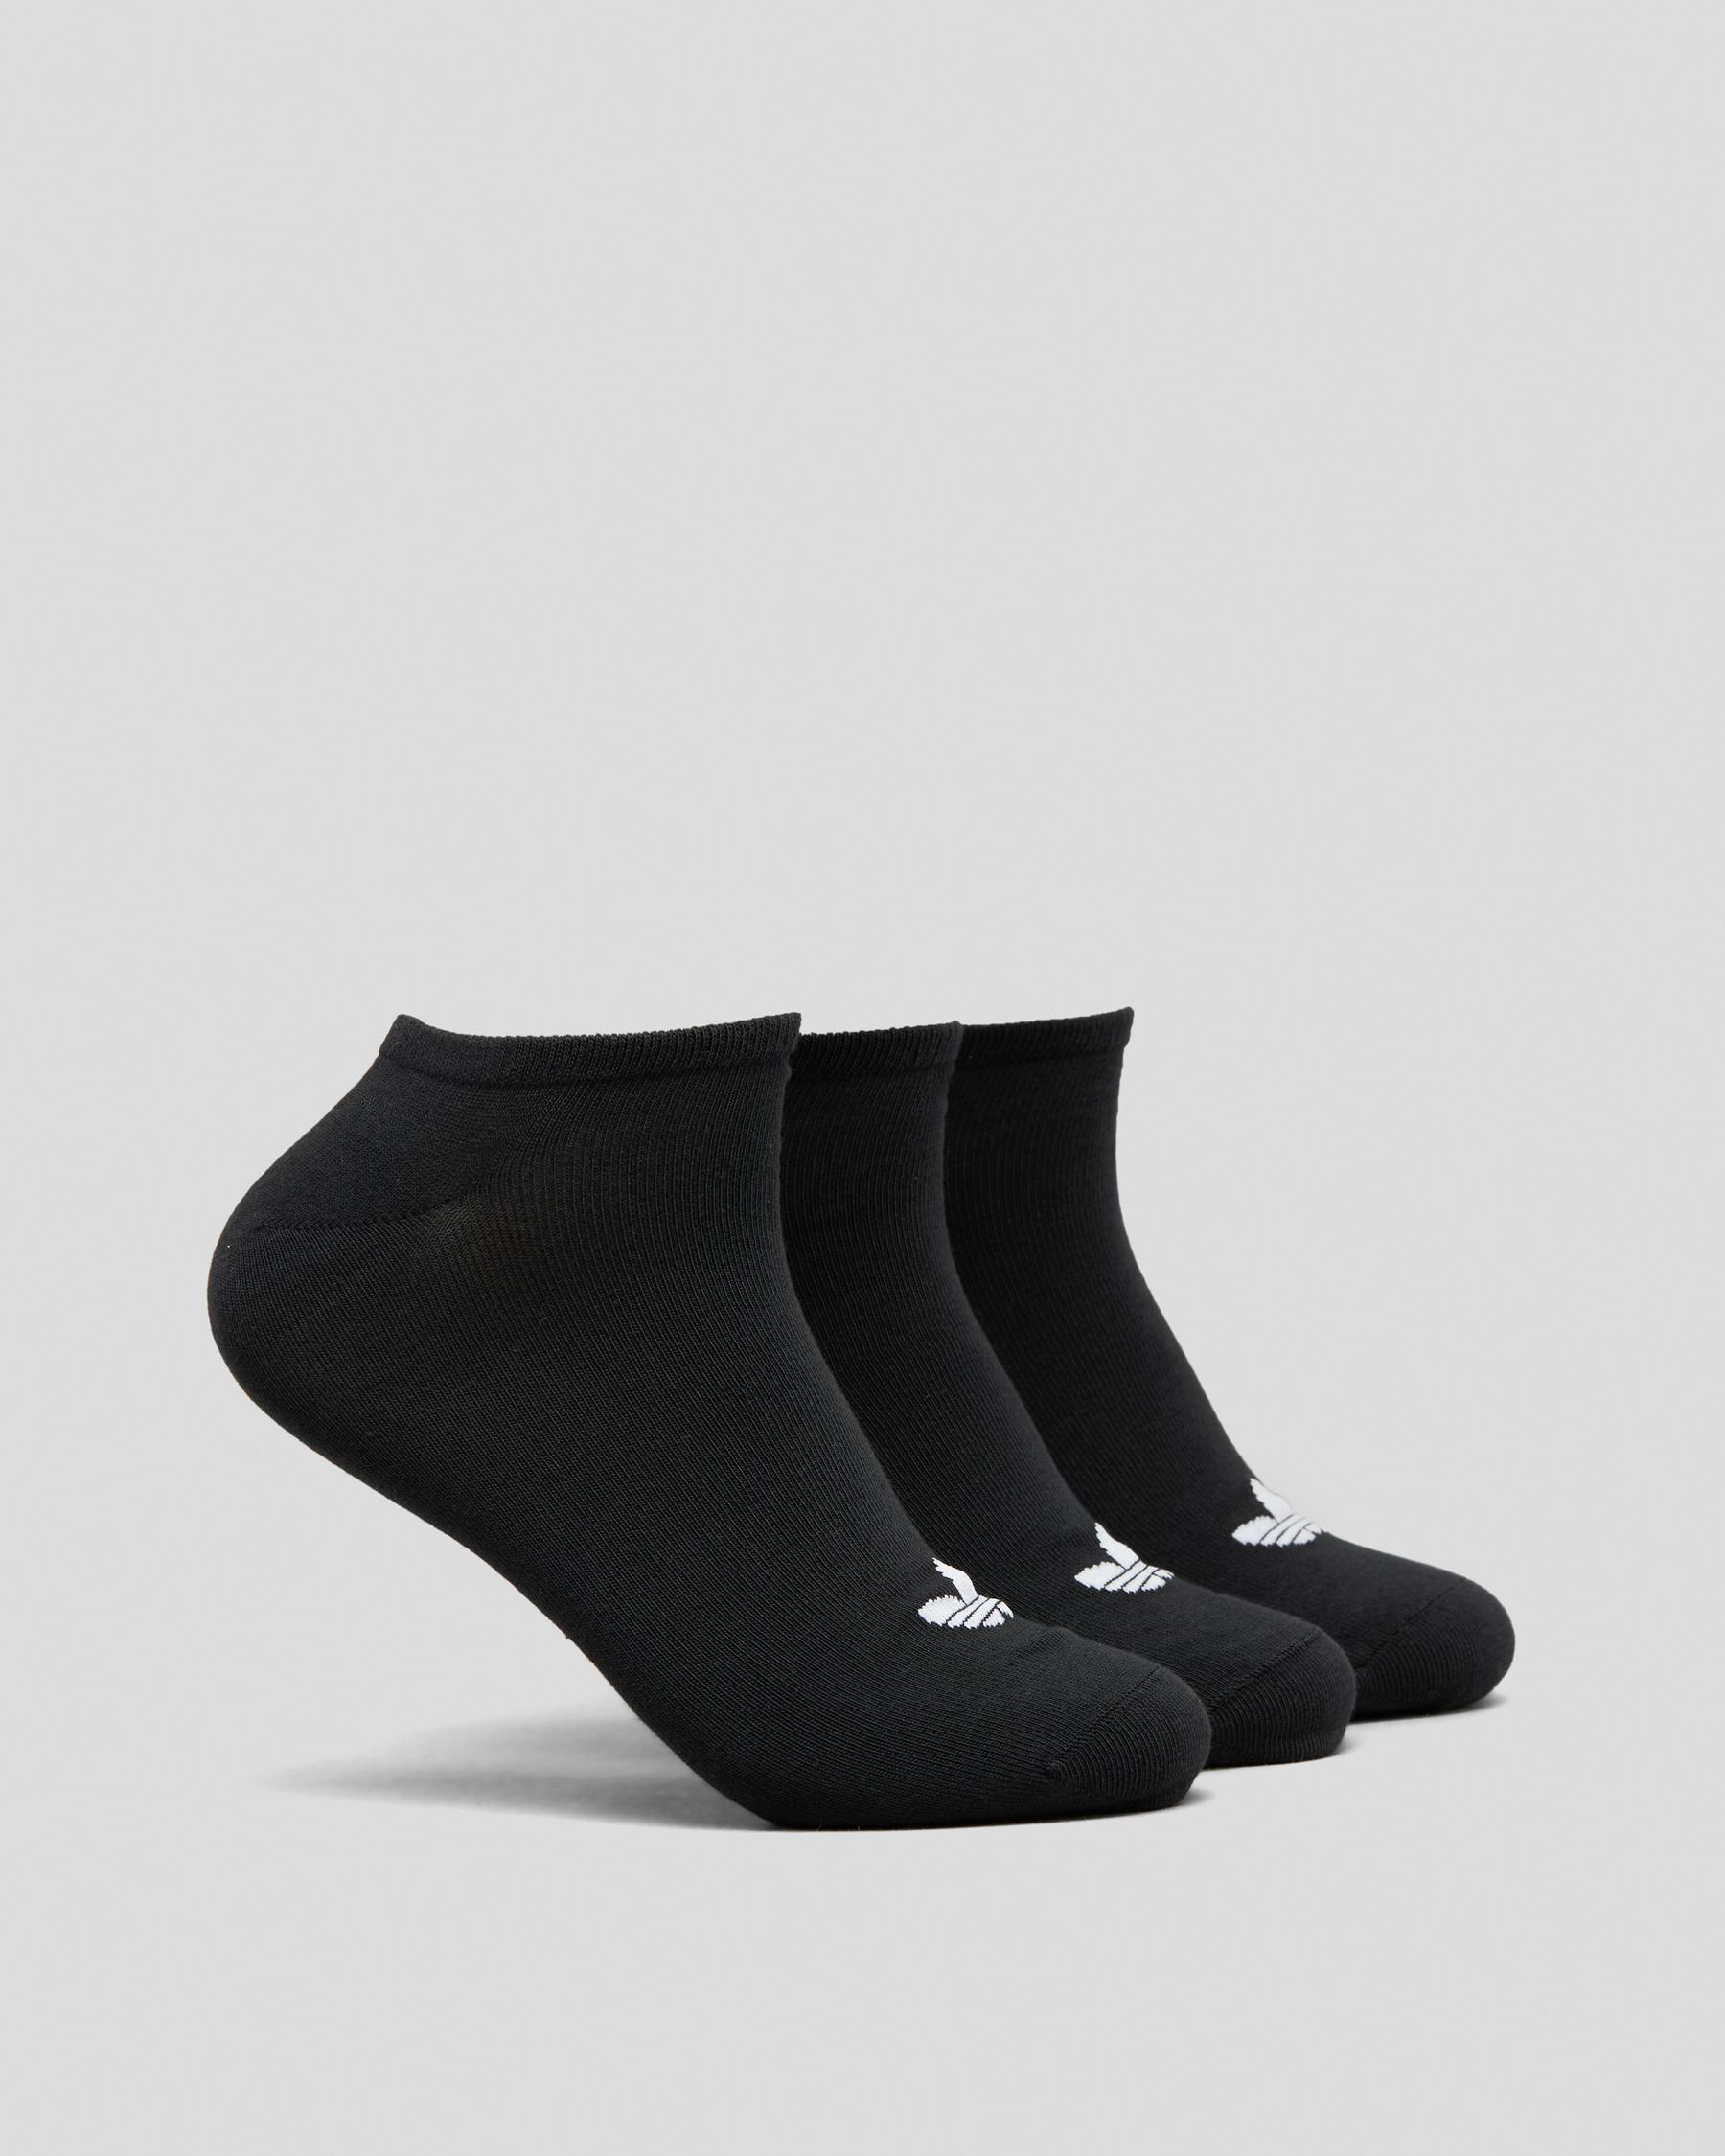 Adidas Trefoil Liner Socks 3 Pack In Black/black/white - Fast Shipping ...